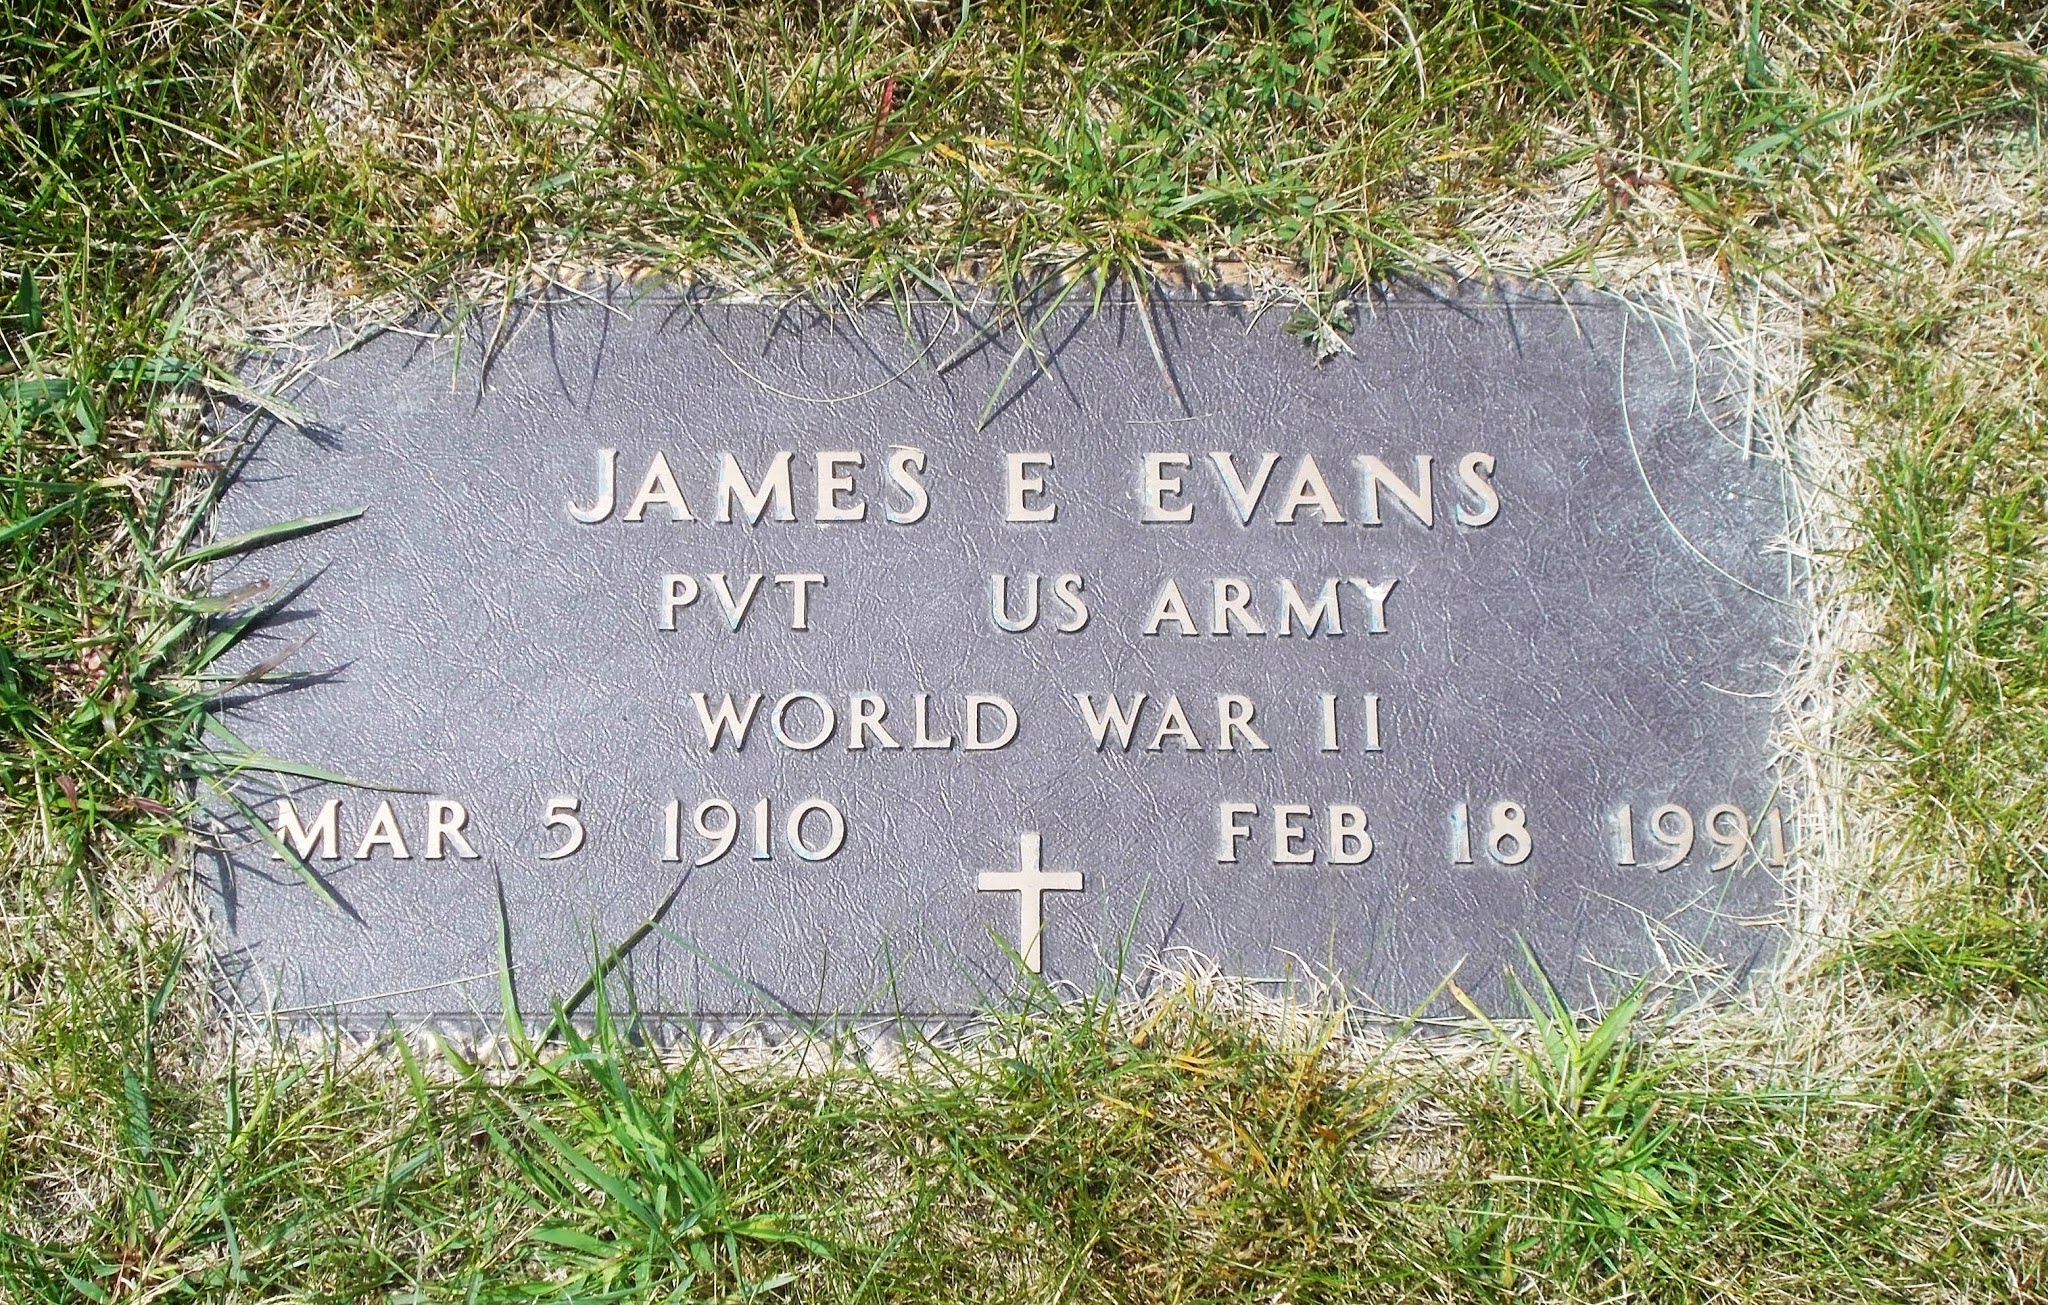 James E Evans